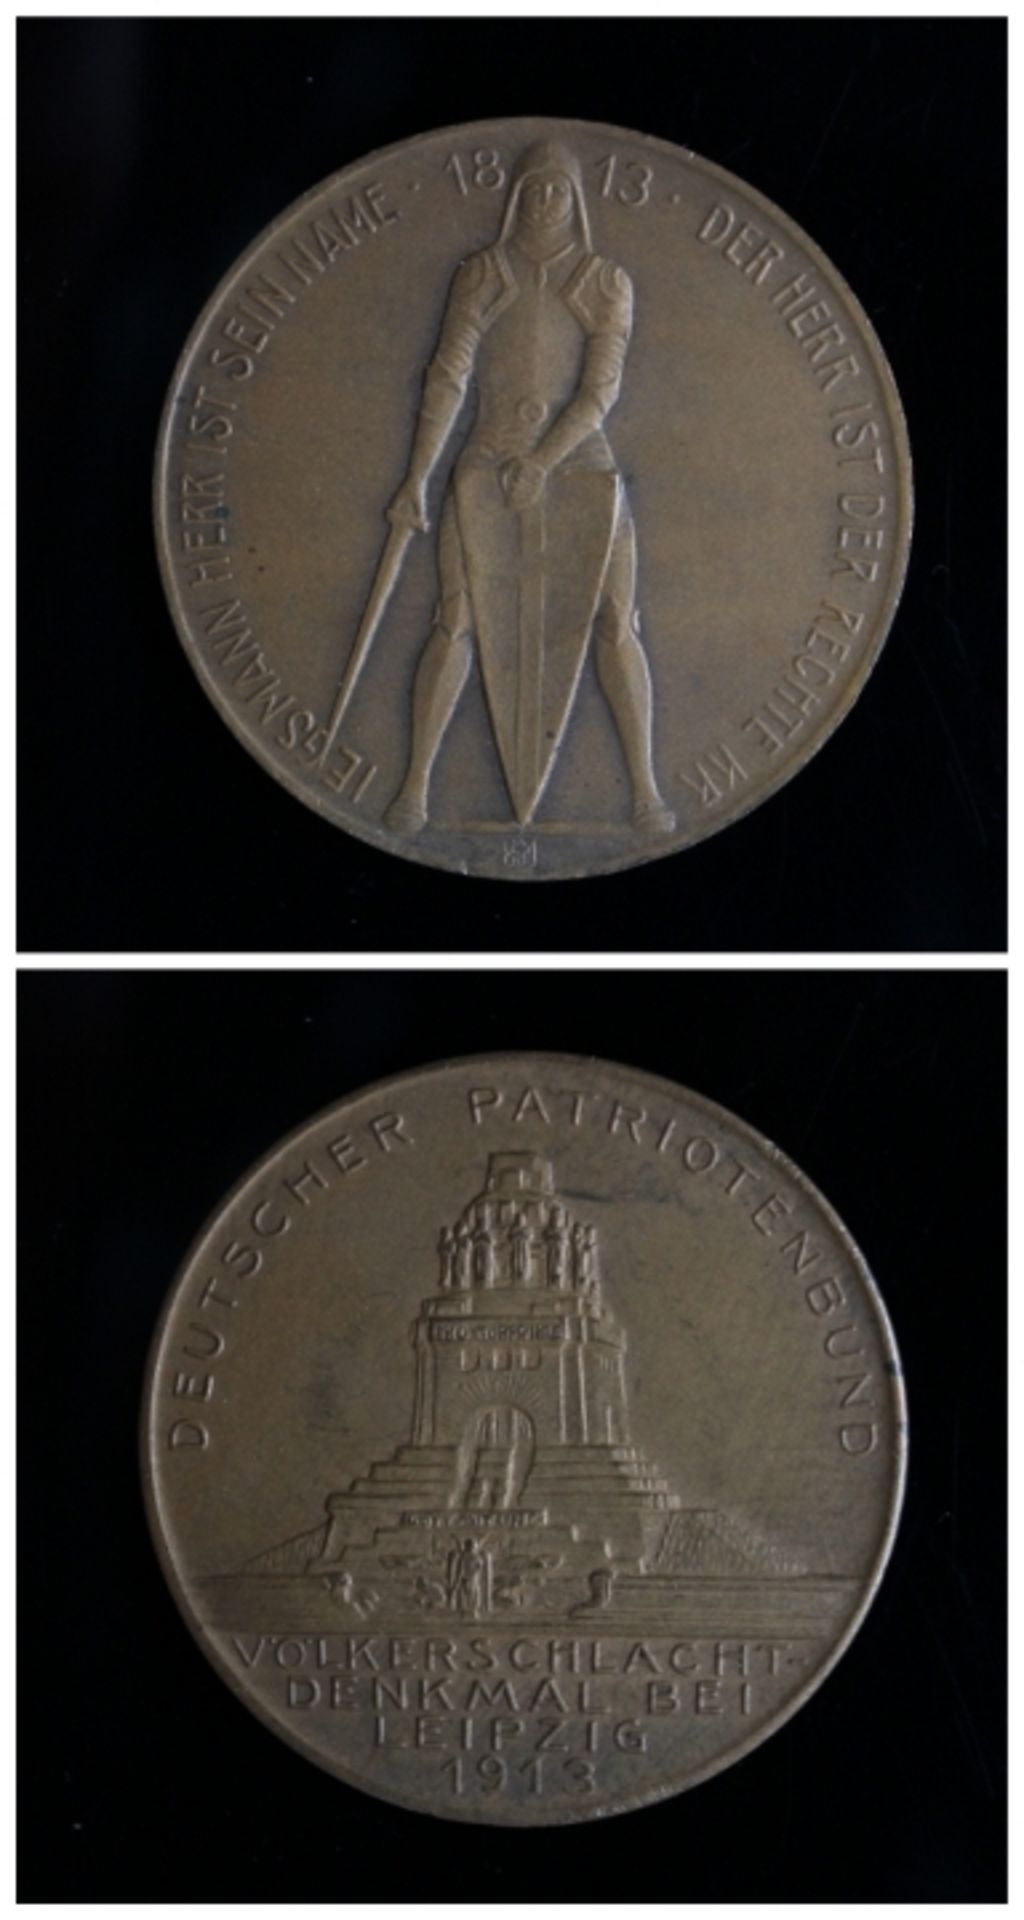 Erinnerungsmedaille - Kupfer 25 Jahre Feldzug (1870/71),Standbild der Siegesgöttin, Rs: Portraits